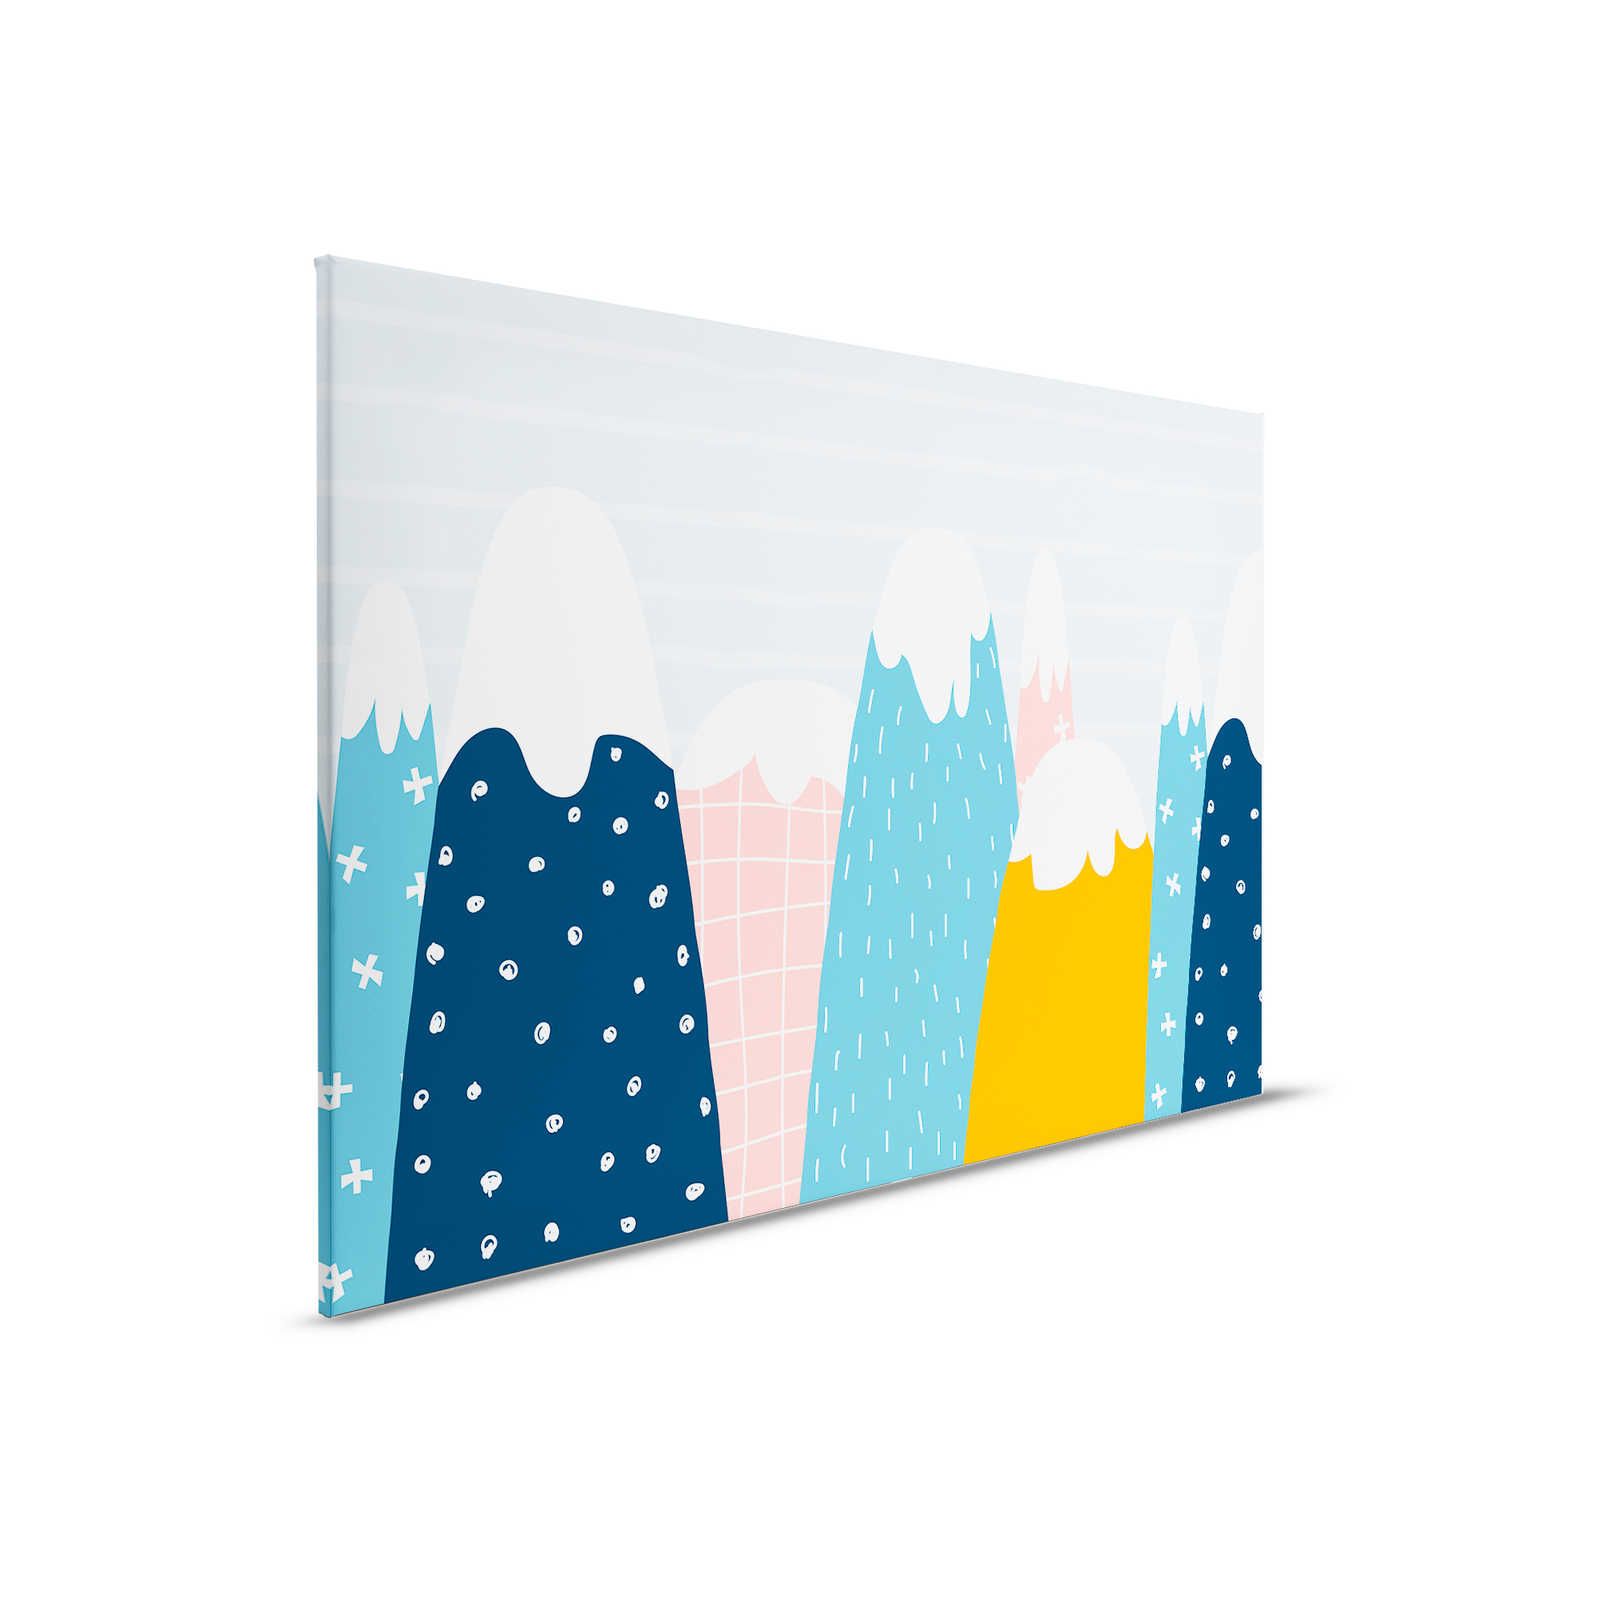 Toile avec collines enneigées dans le style peint - 90 cm x 60 cm
